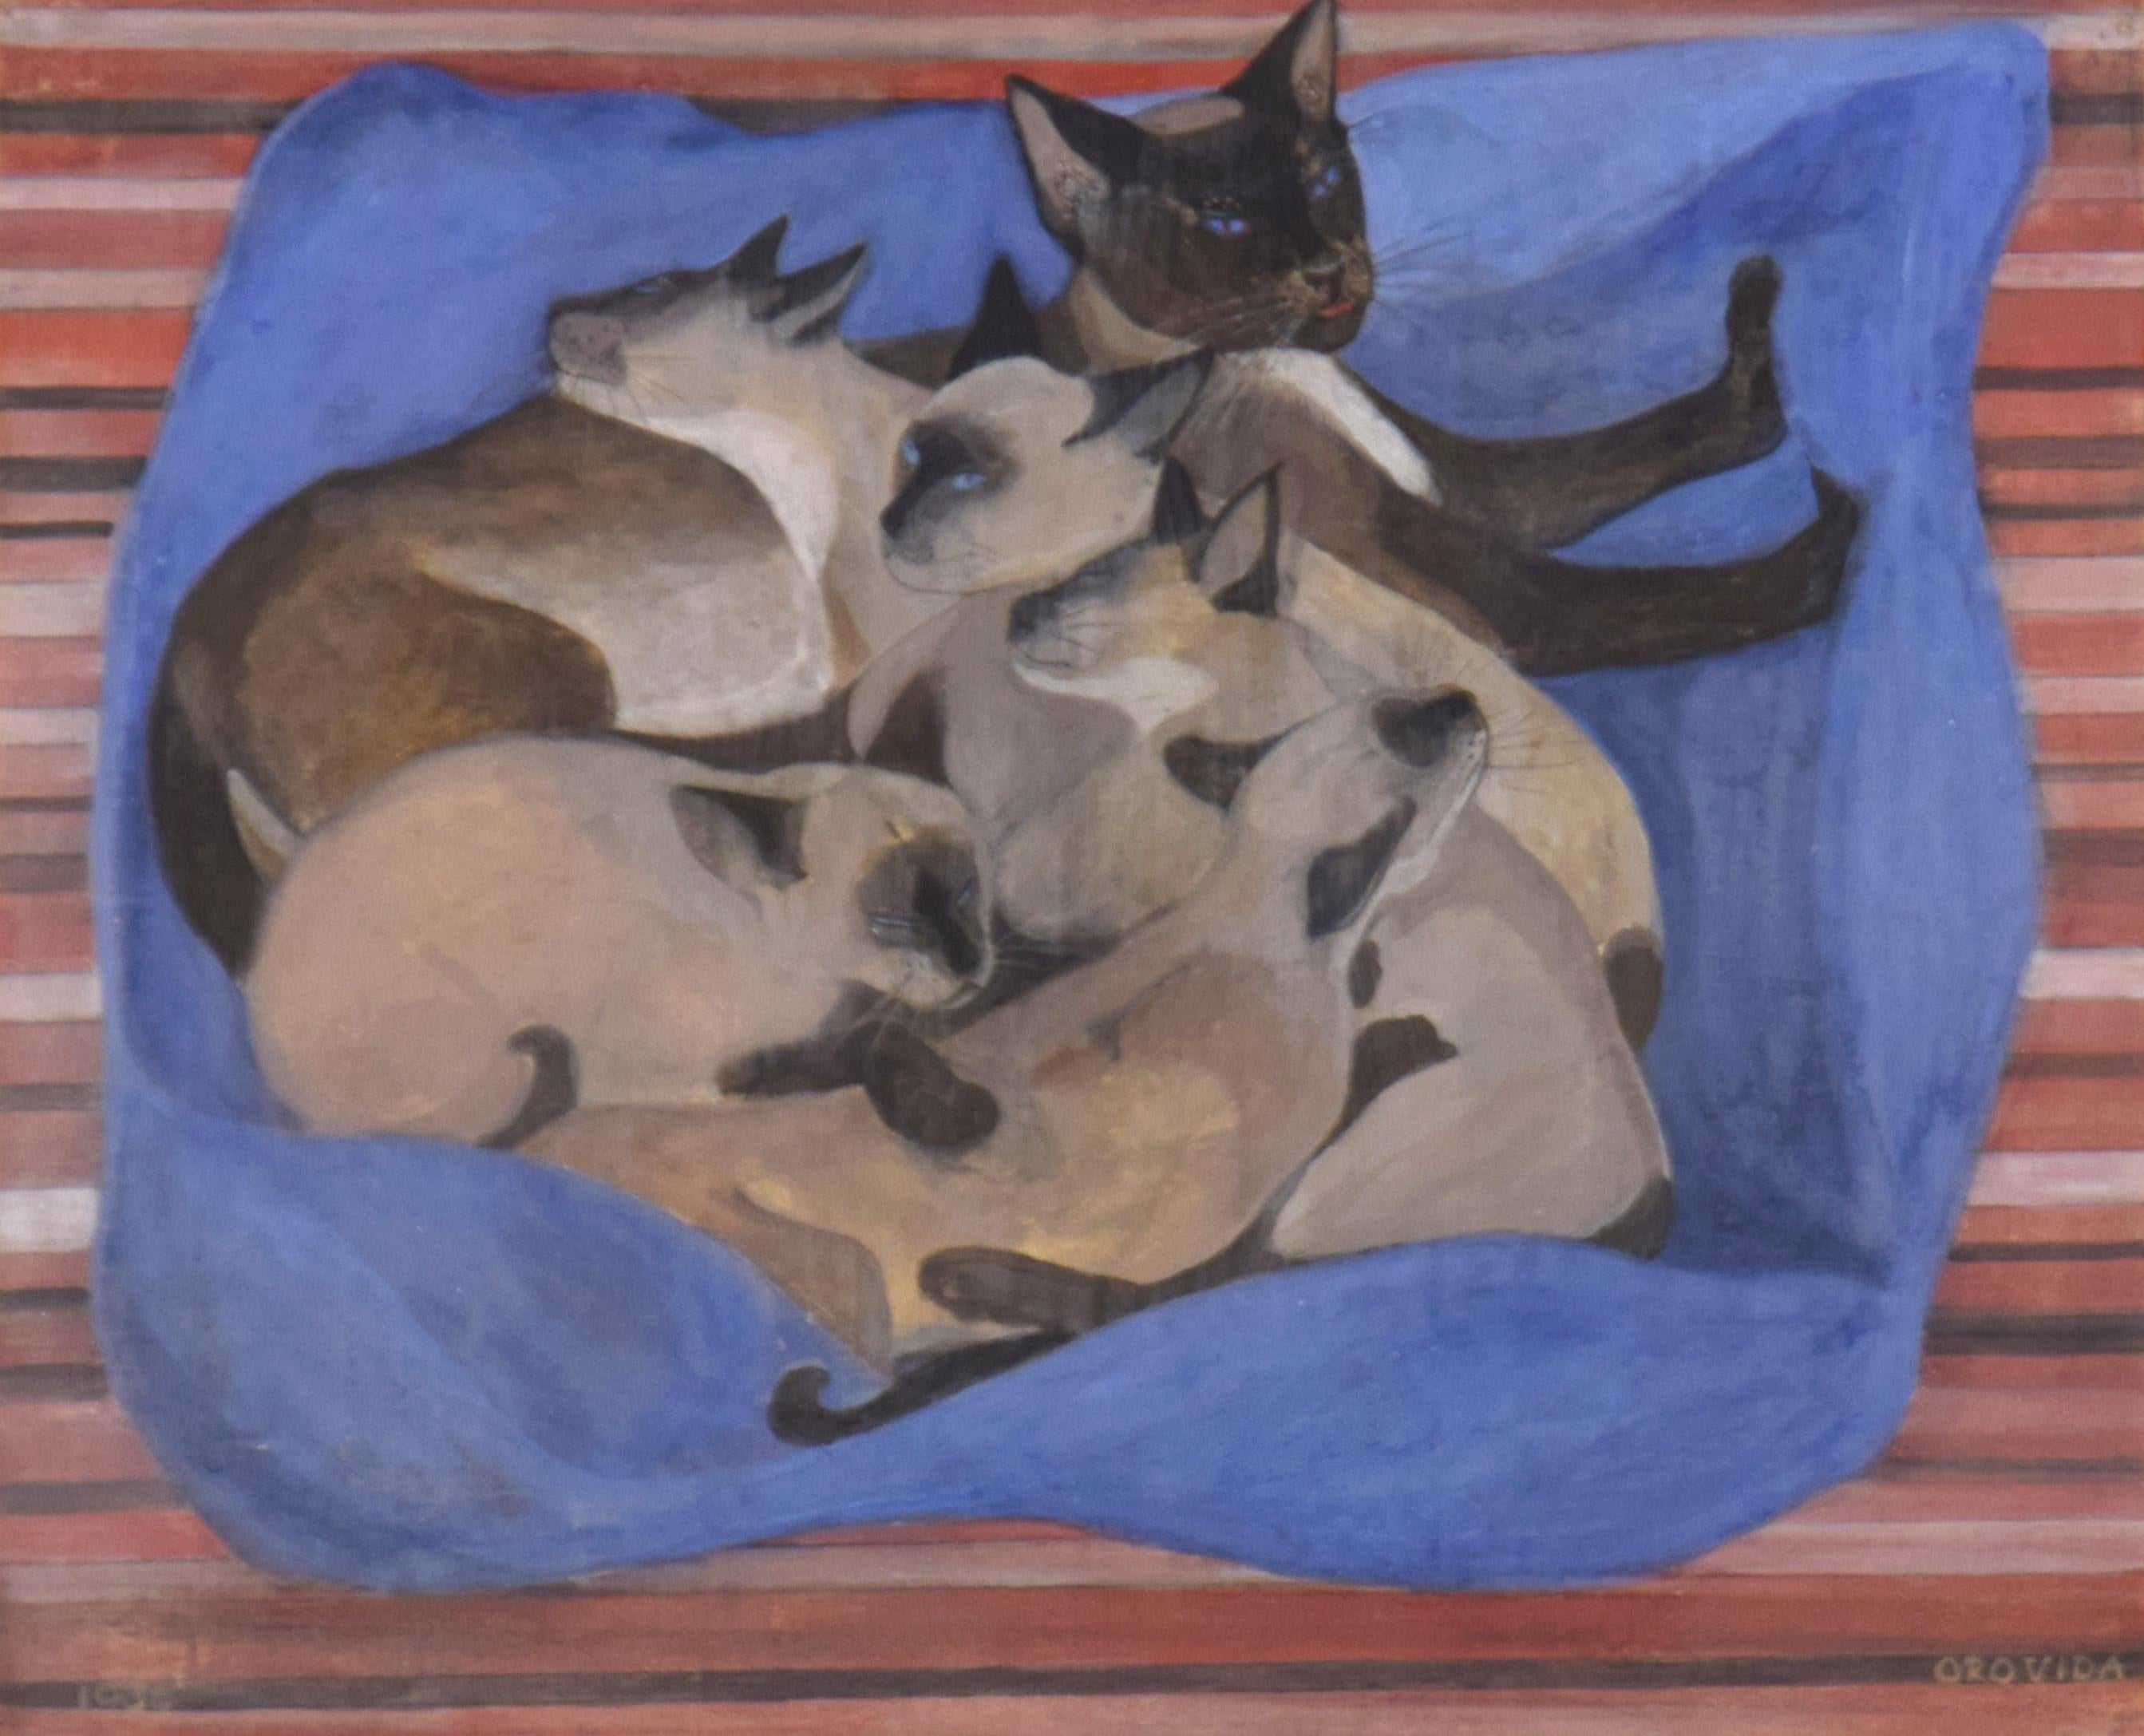 Siamesische Katze mit Kätzchen von Orovida Pissarro (1893-1968)
Eitempera auf Leinen
39 x 48 cm (15³/₈ x 18⁷/₈ Zoll)
Signiert unten rechts Orovida und datiert unten links 1934

Provenienz
J Ankri, 8. Oktober 1967

Literatur
K. L. Erickson, Orovida